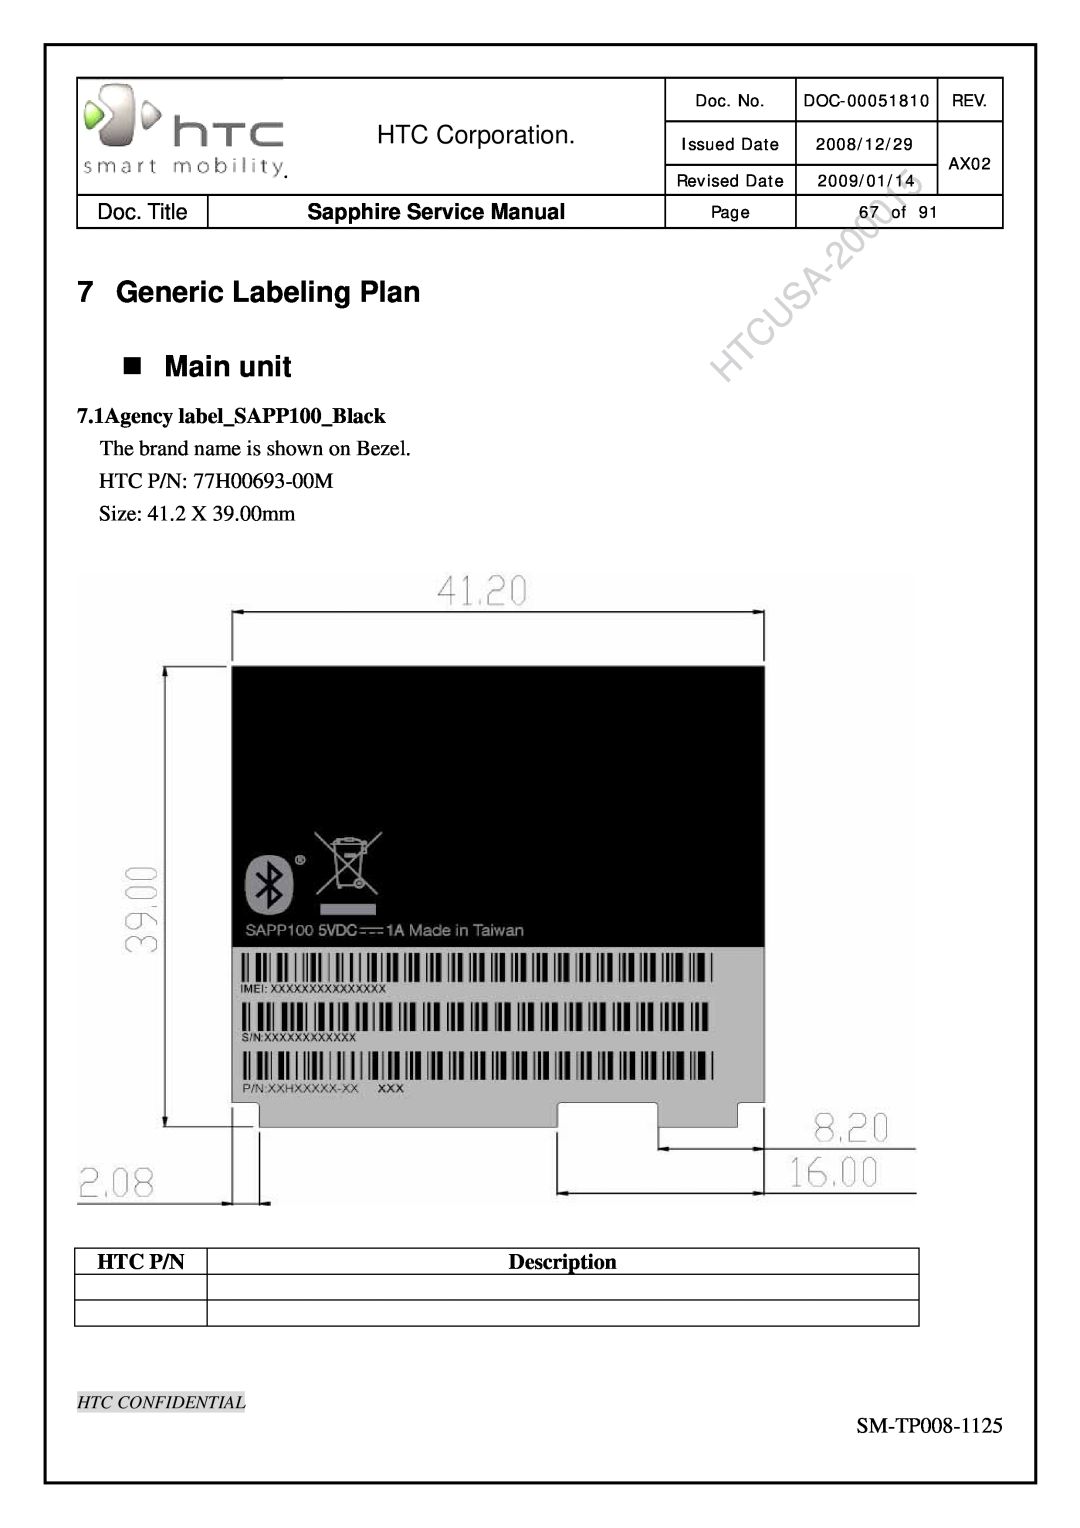 HTC SM-TP008-1125 Generic Labeling Plan „ Main unit, 7.1Agency labelSAPP100Black, Htc P/N, Description, HTC Corporation 